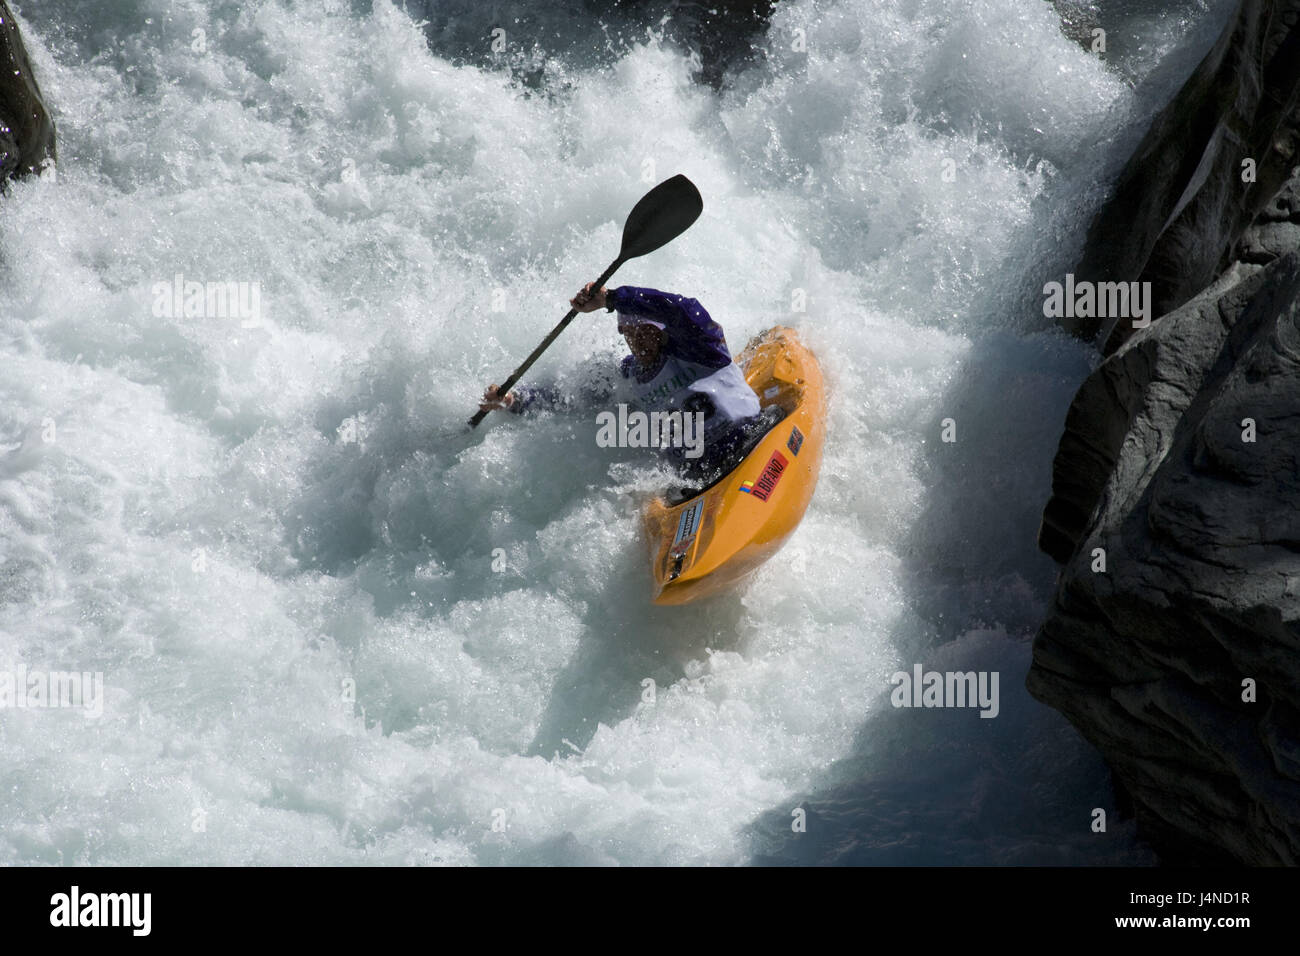 Italy, Piedmont, kayak, kayakist, torrent, sport Stock Photo